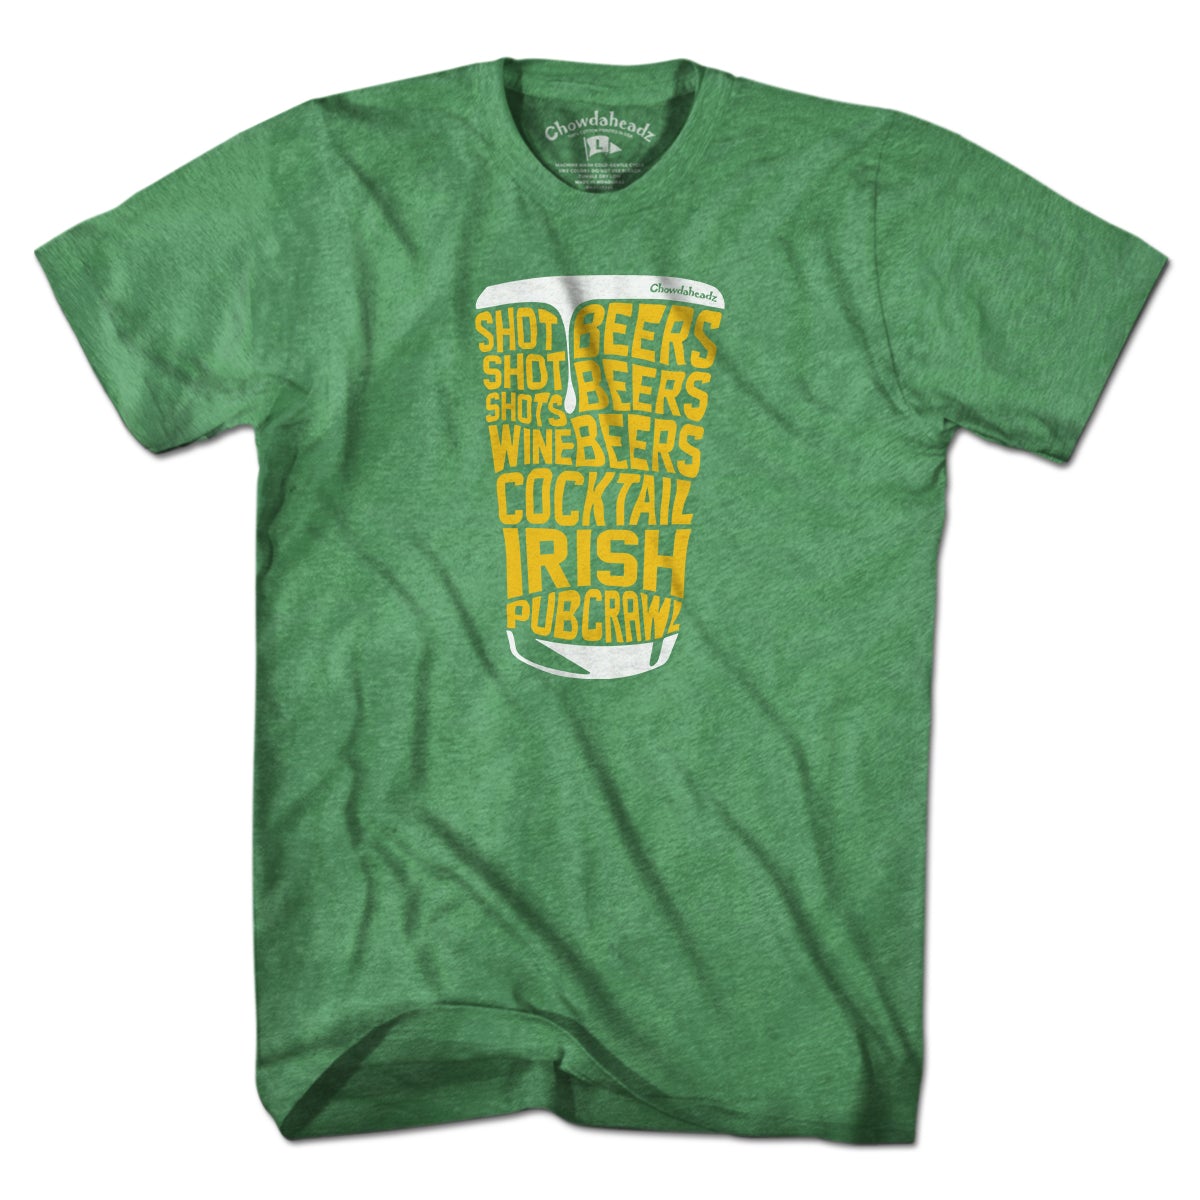 Irish Pub Crawl T-Shirt - Chowdaheadz